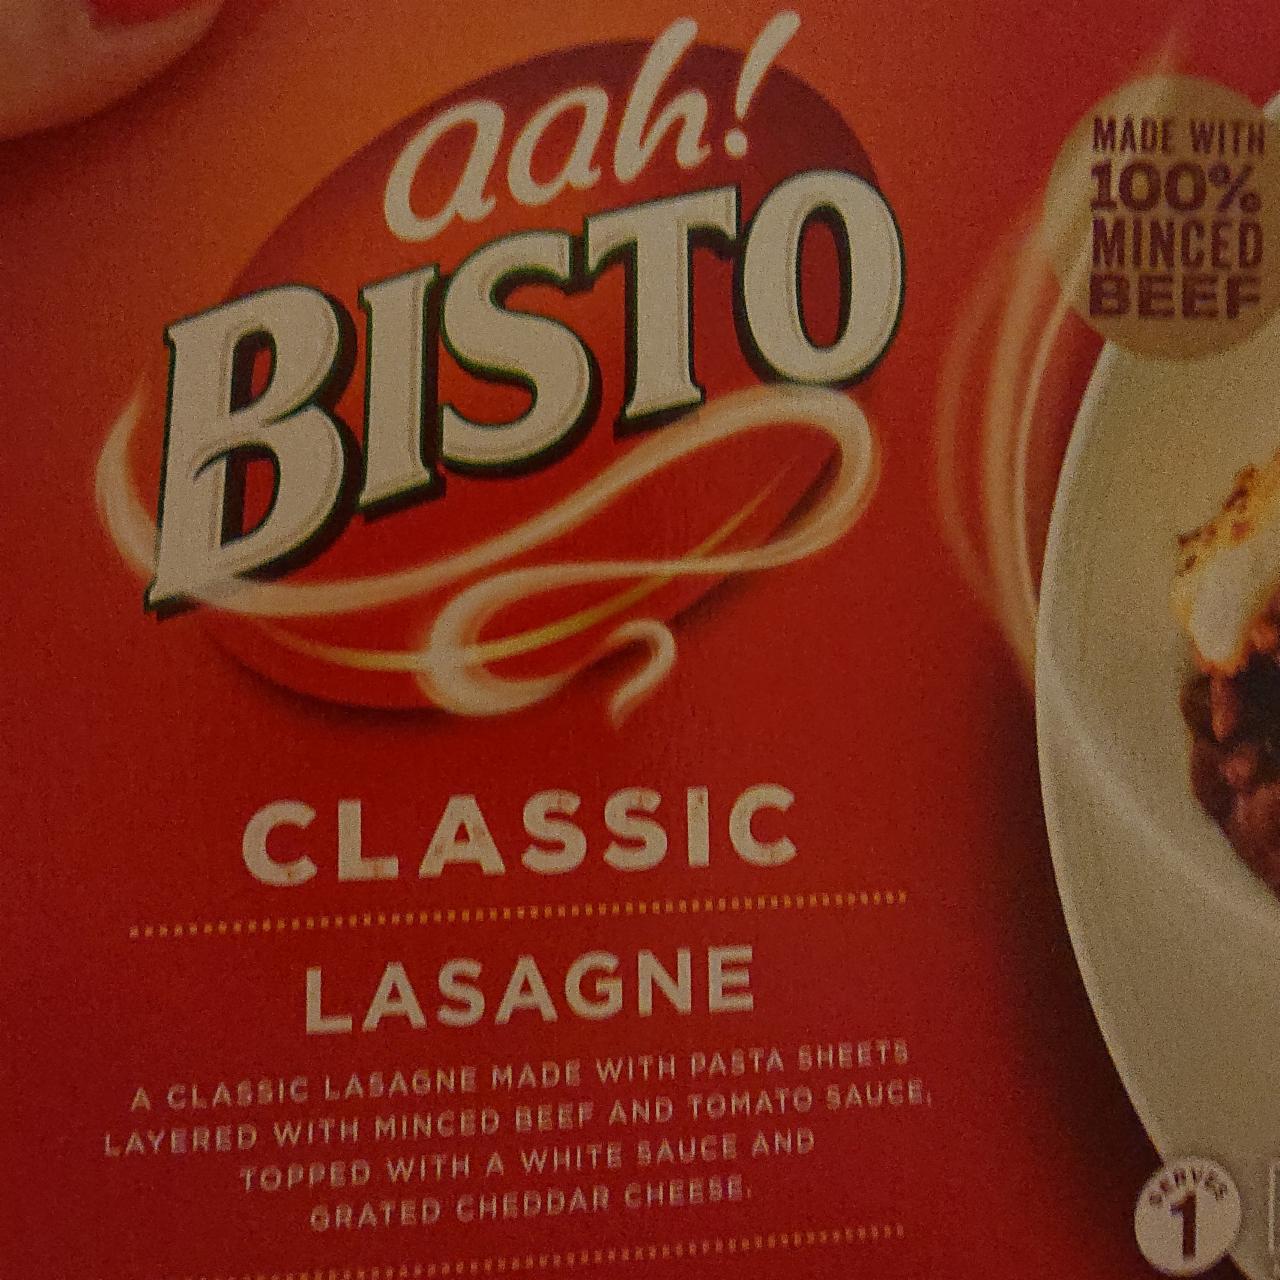 Fotografie - Classic Lasagne aah! Bisto